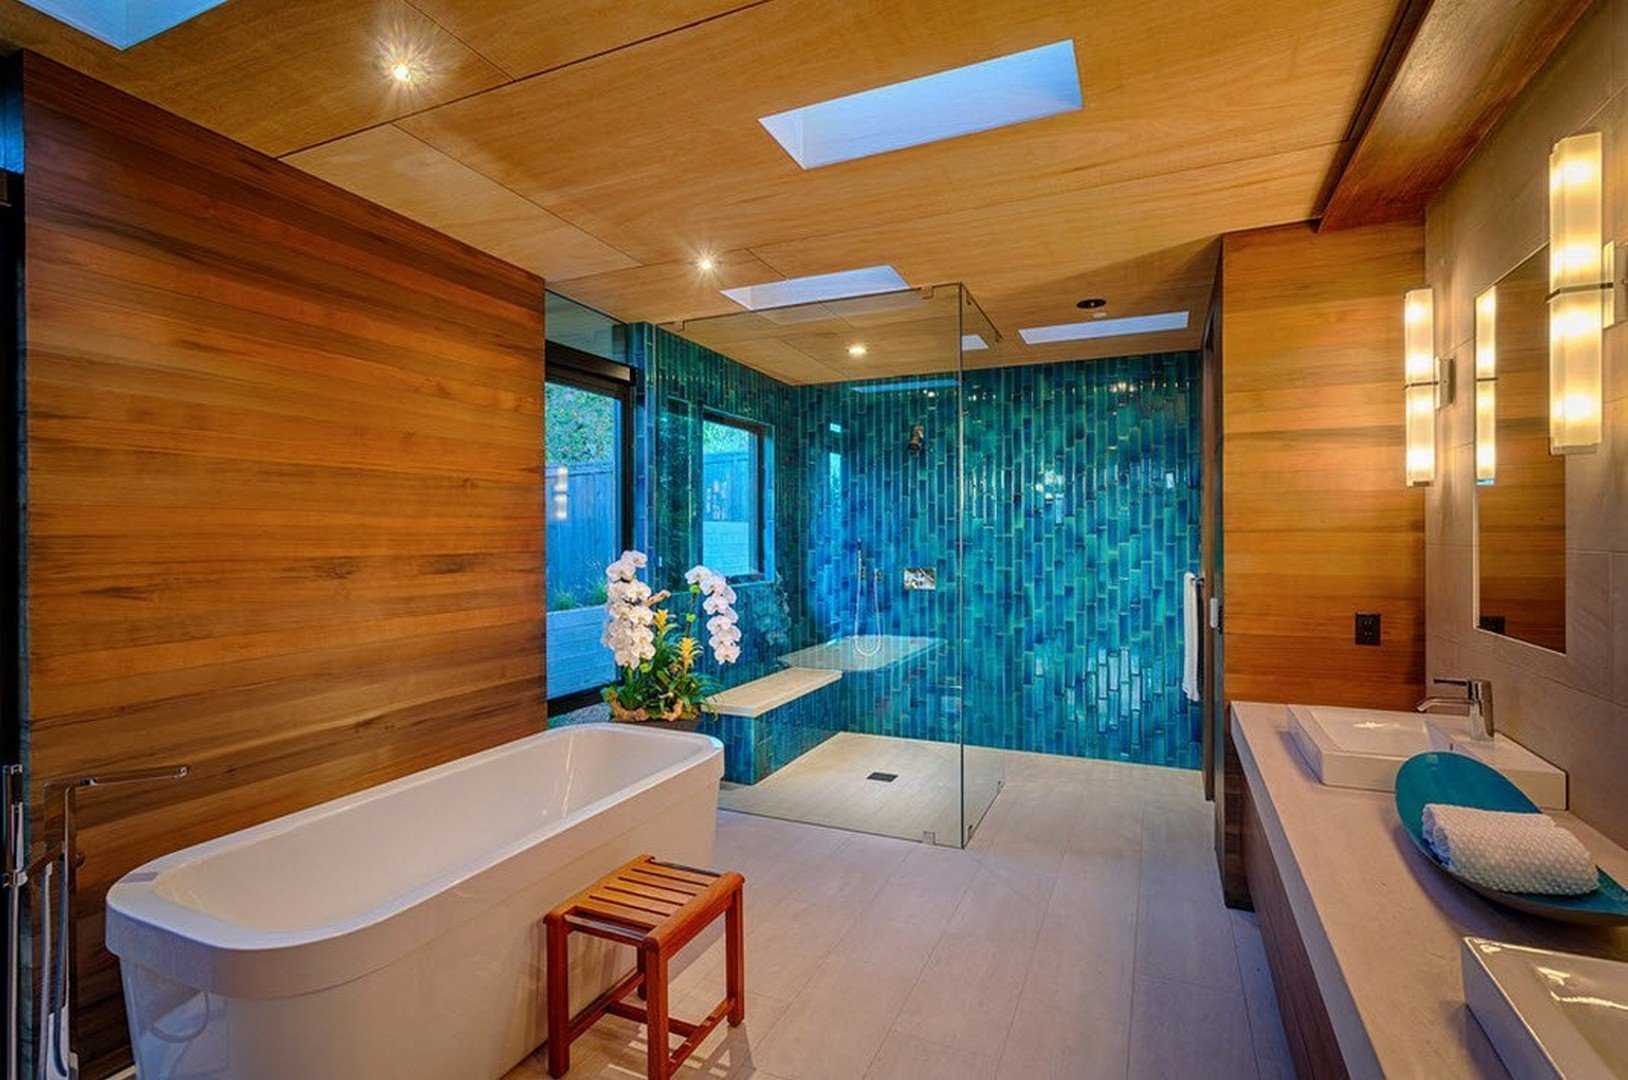 Отделка ванных комнат: стильные и необычные идеи дизайна